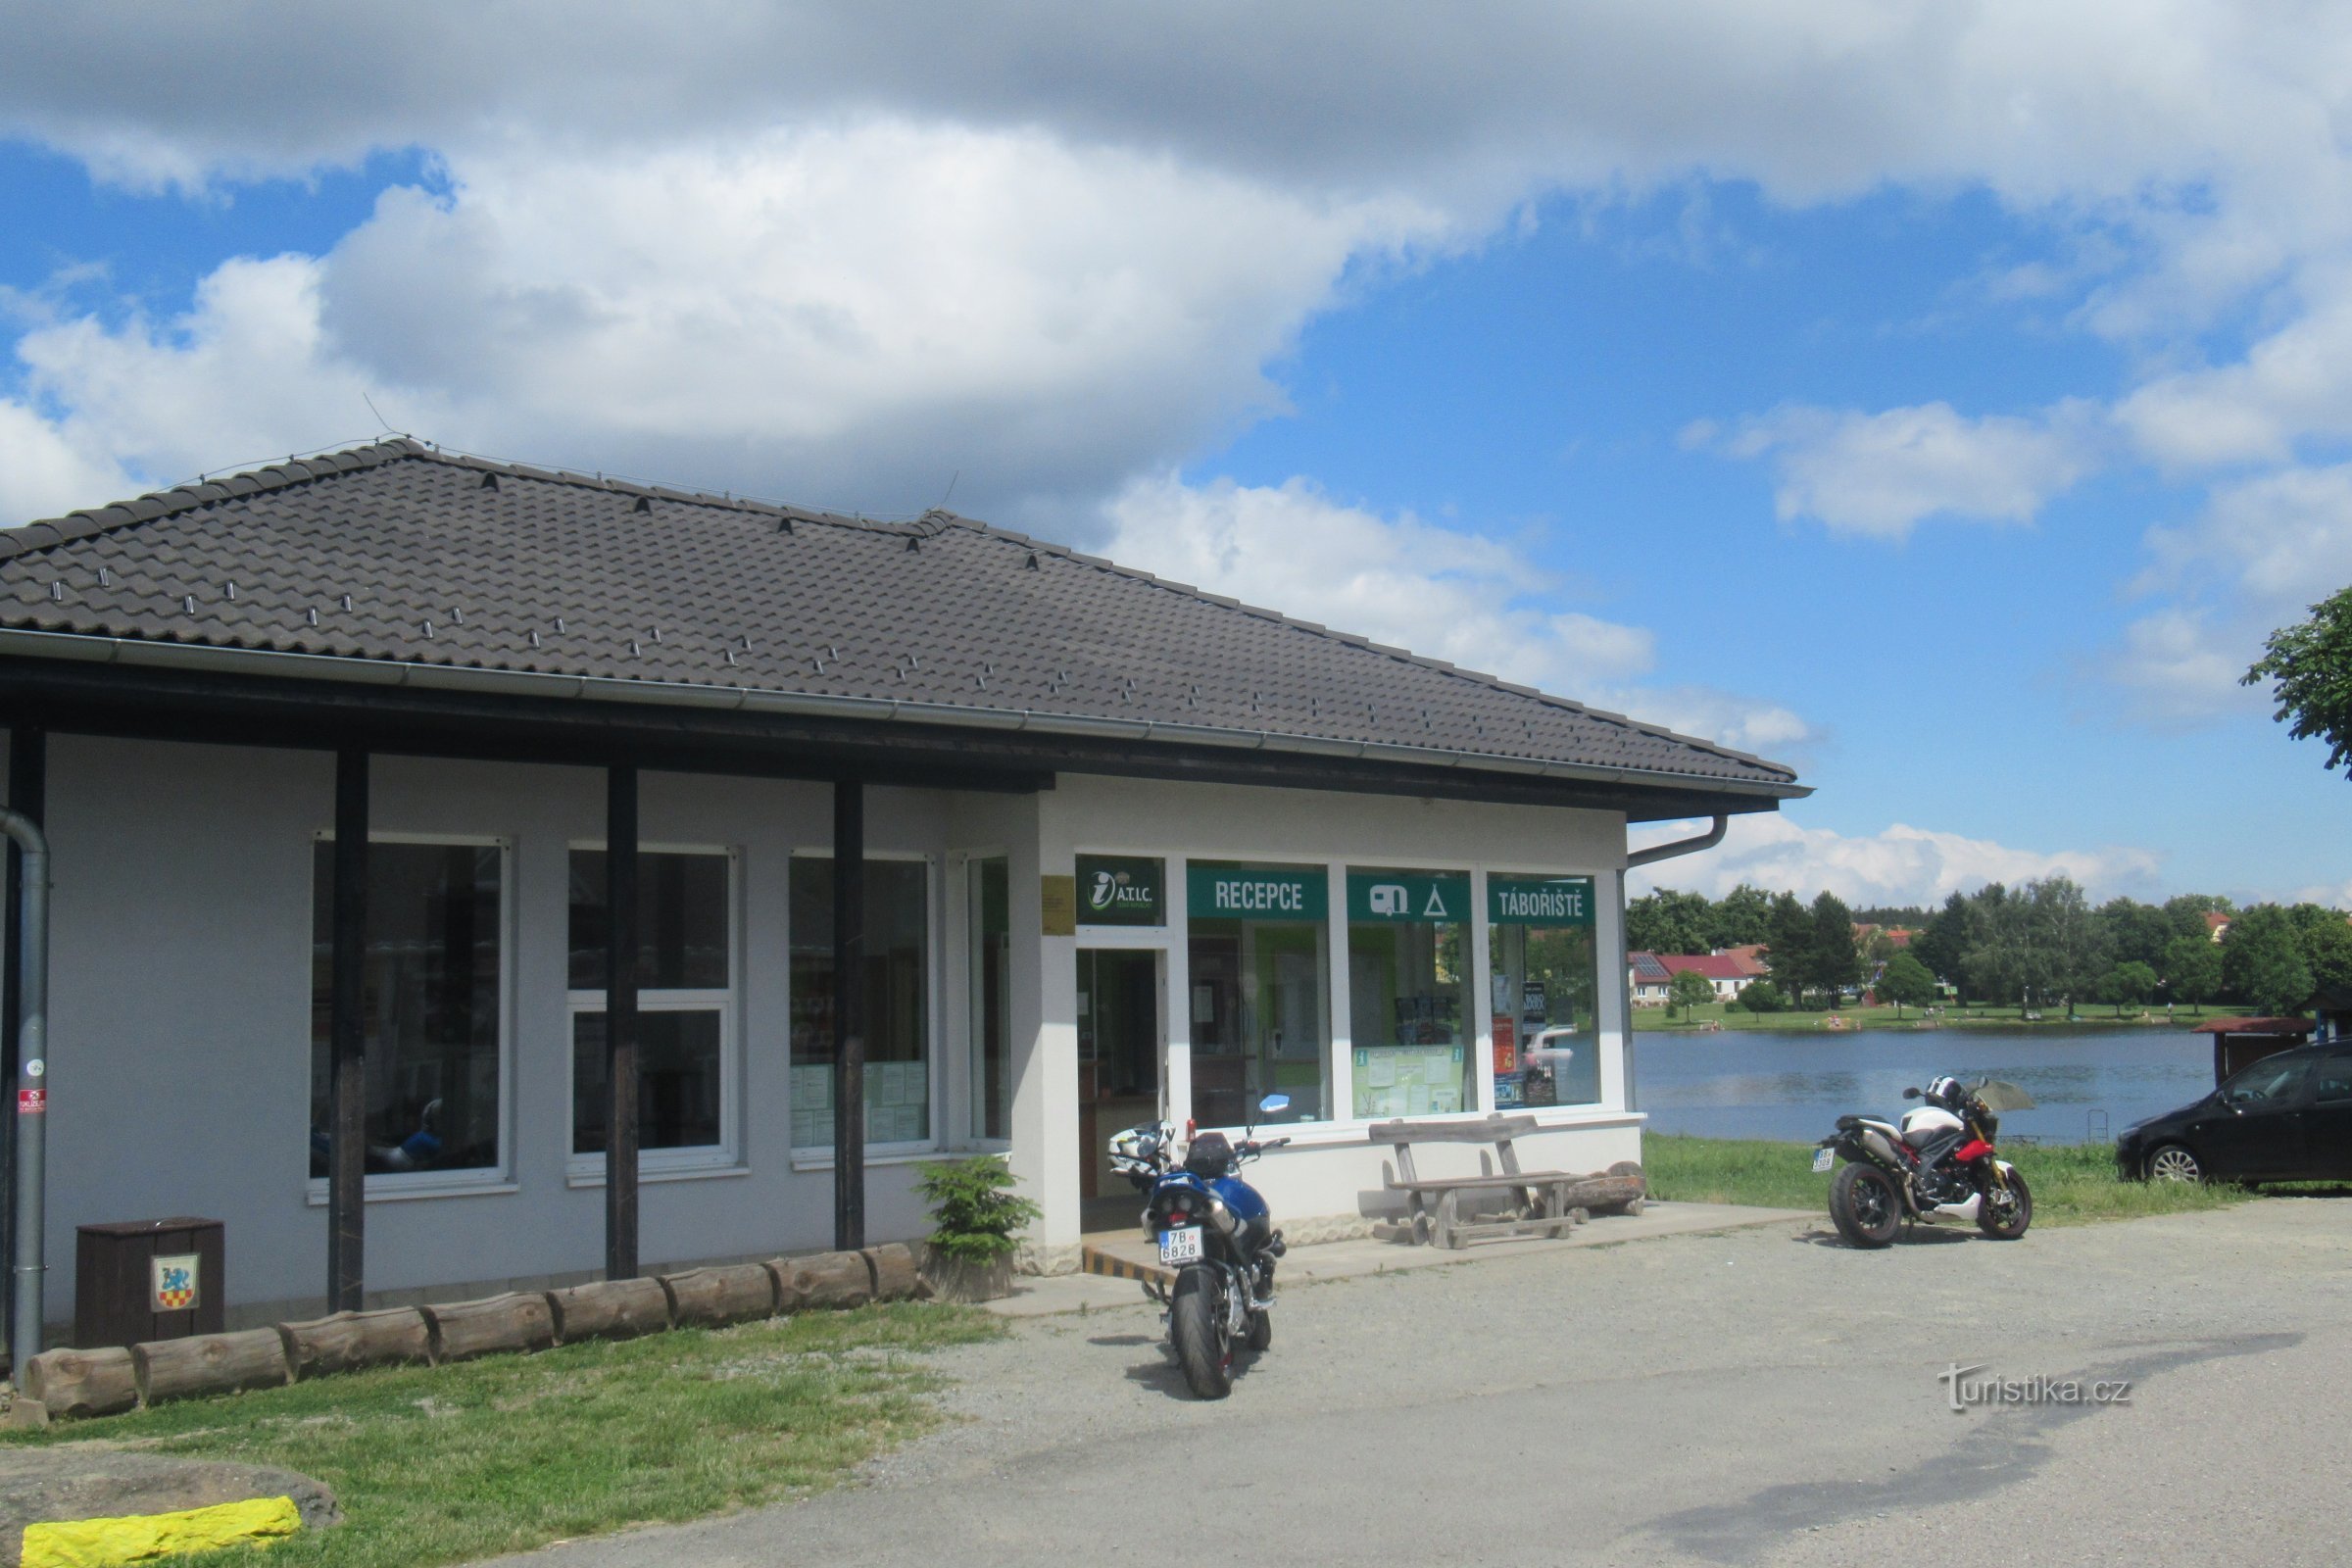 Suchý - Tourist Information Center